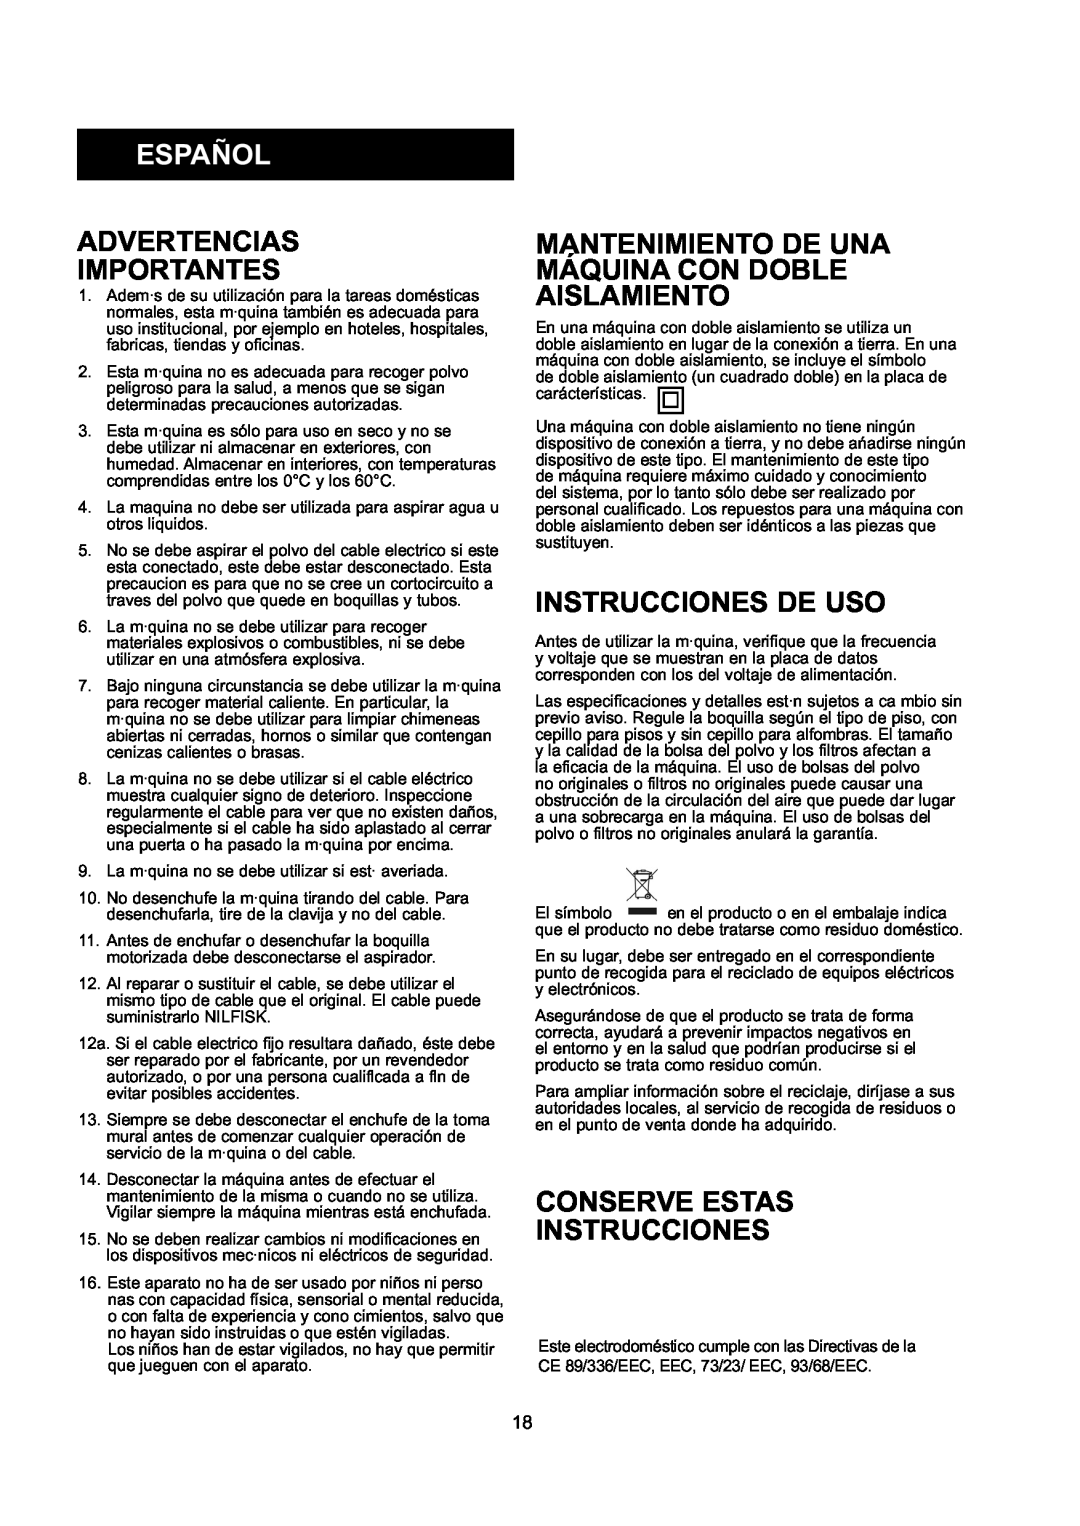 Nilfisk-ALTO GD 10 Back, GD 5 Back Español, Advertencias Importantes, Instrucciones De Uso, Conserve Estas Instrucciones 